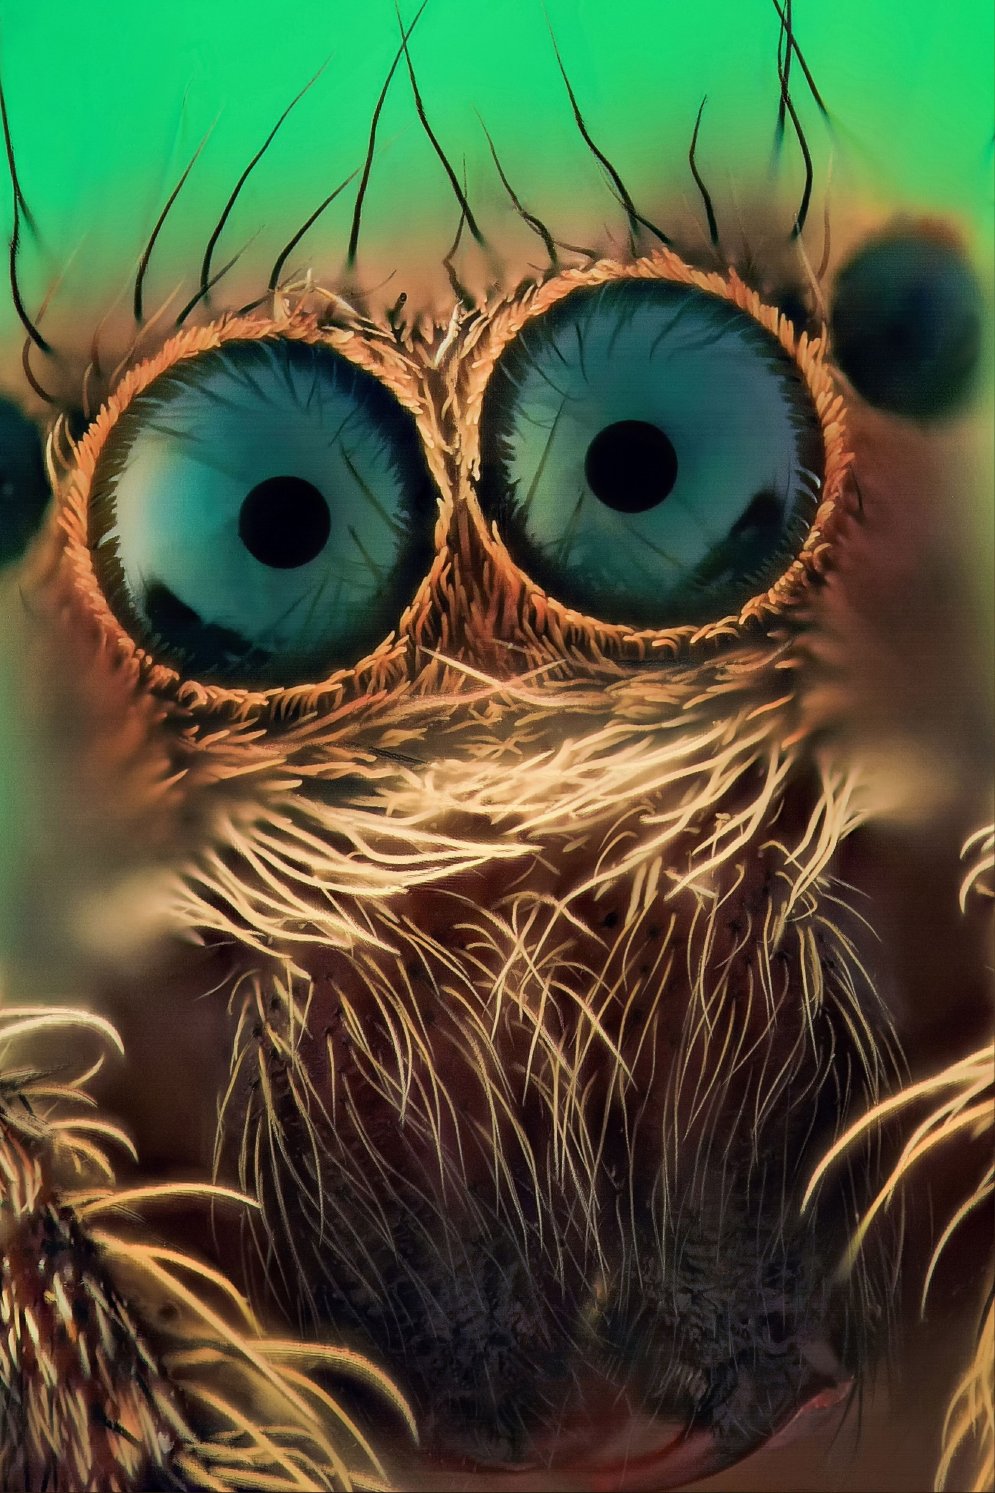 Страшные или милые? 12 макрофото пауков-скакунов с четырьмя парами… глаз